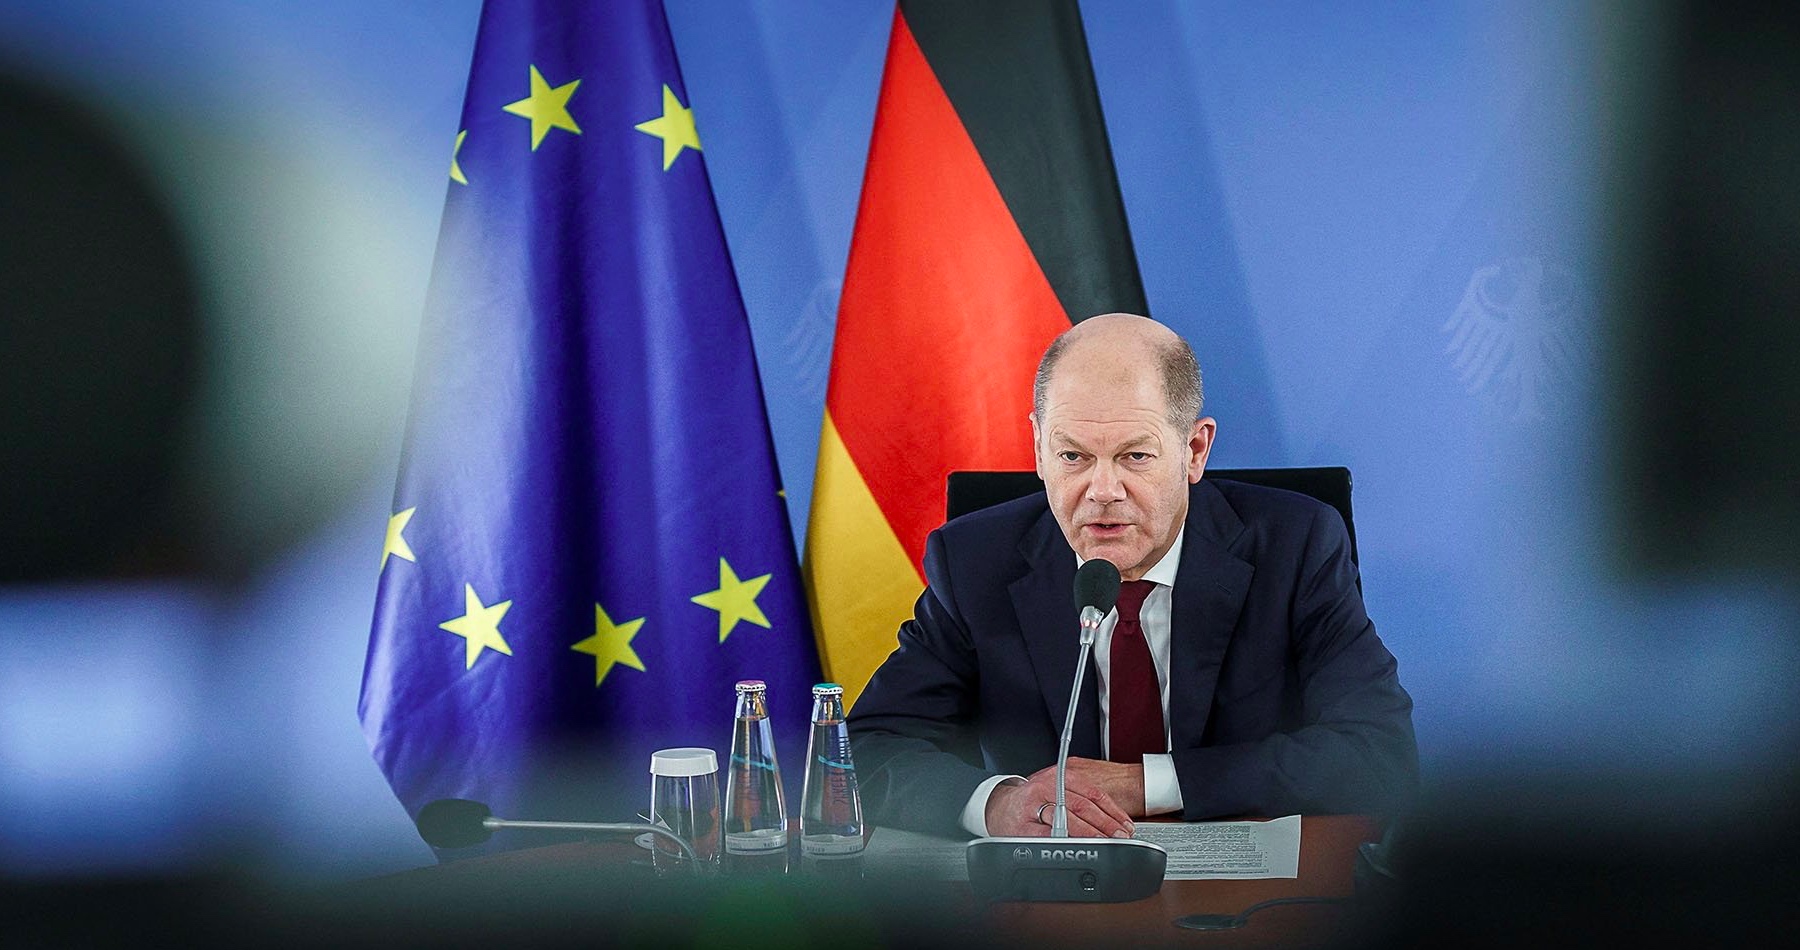 Nemecký kancelár Scholz vyhlásil, že Putin sa v rozhovore s ním nevyhrážal ani jemu ani Nemecku